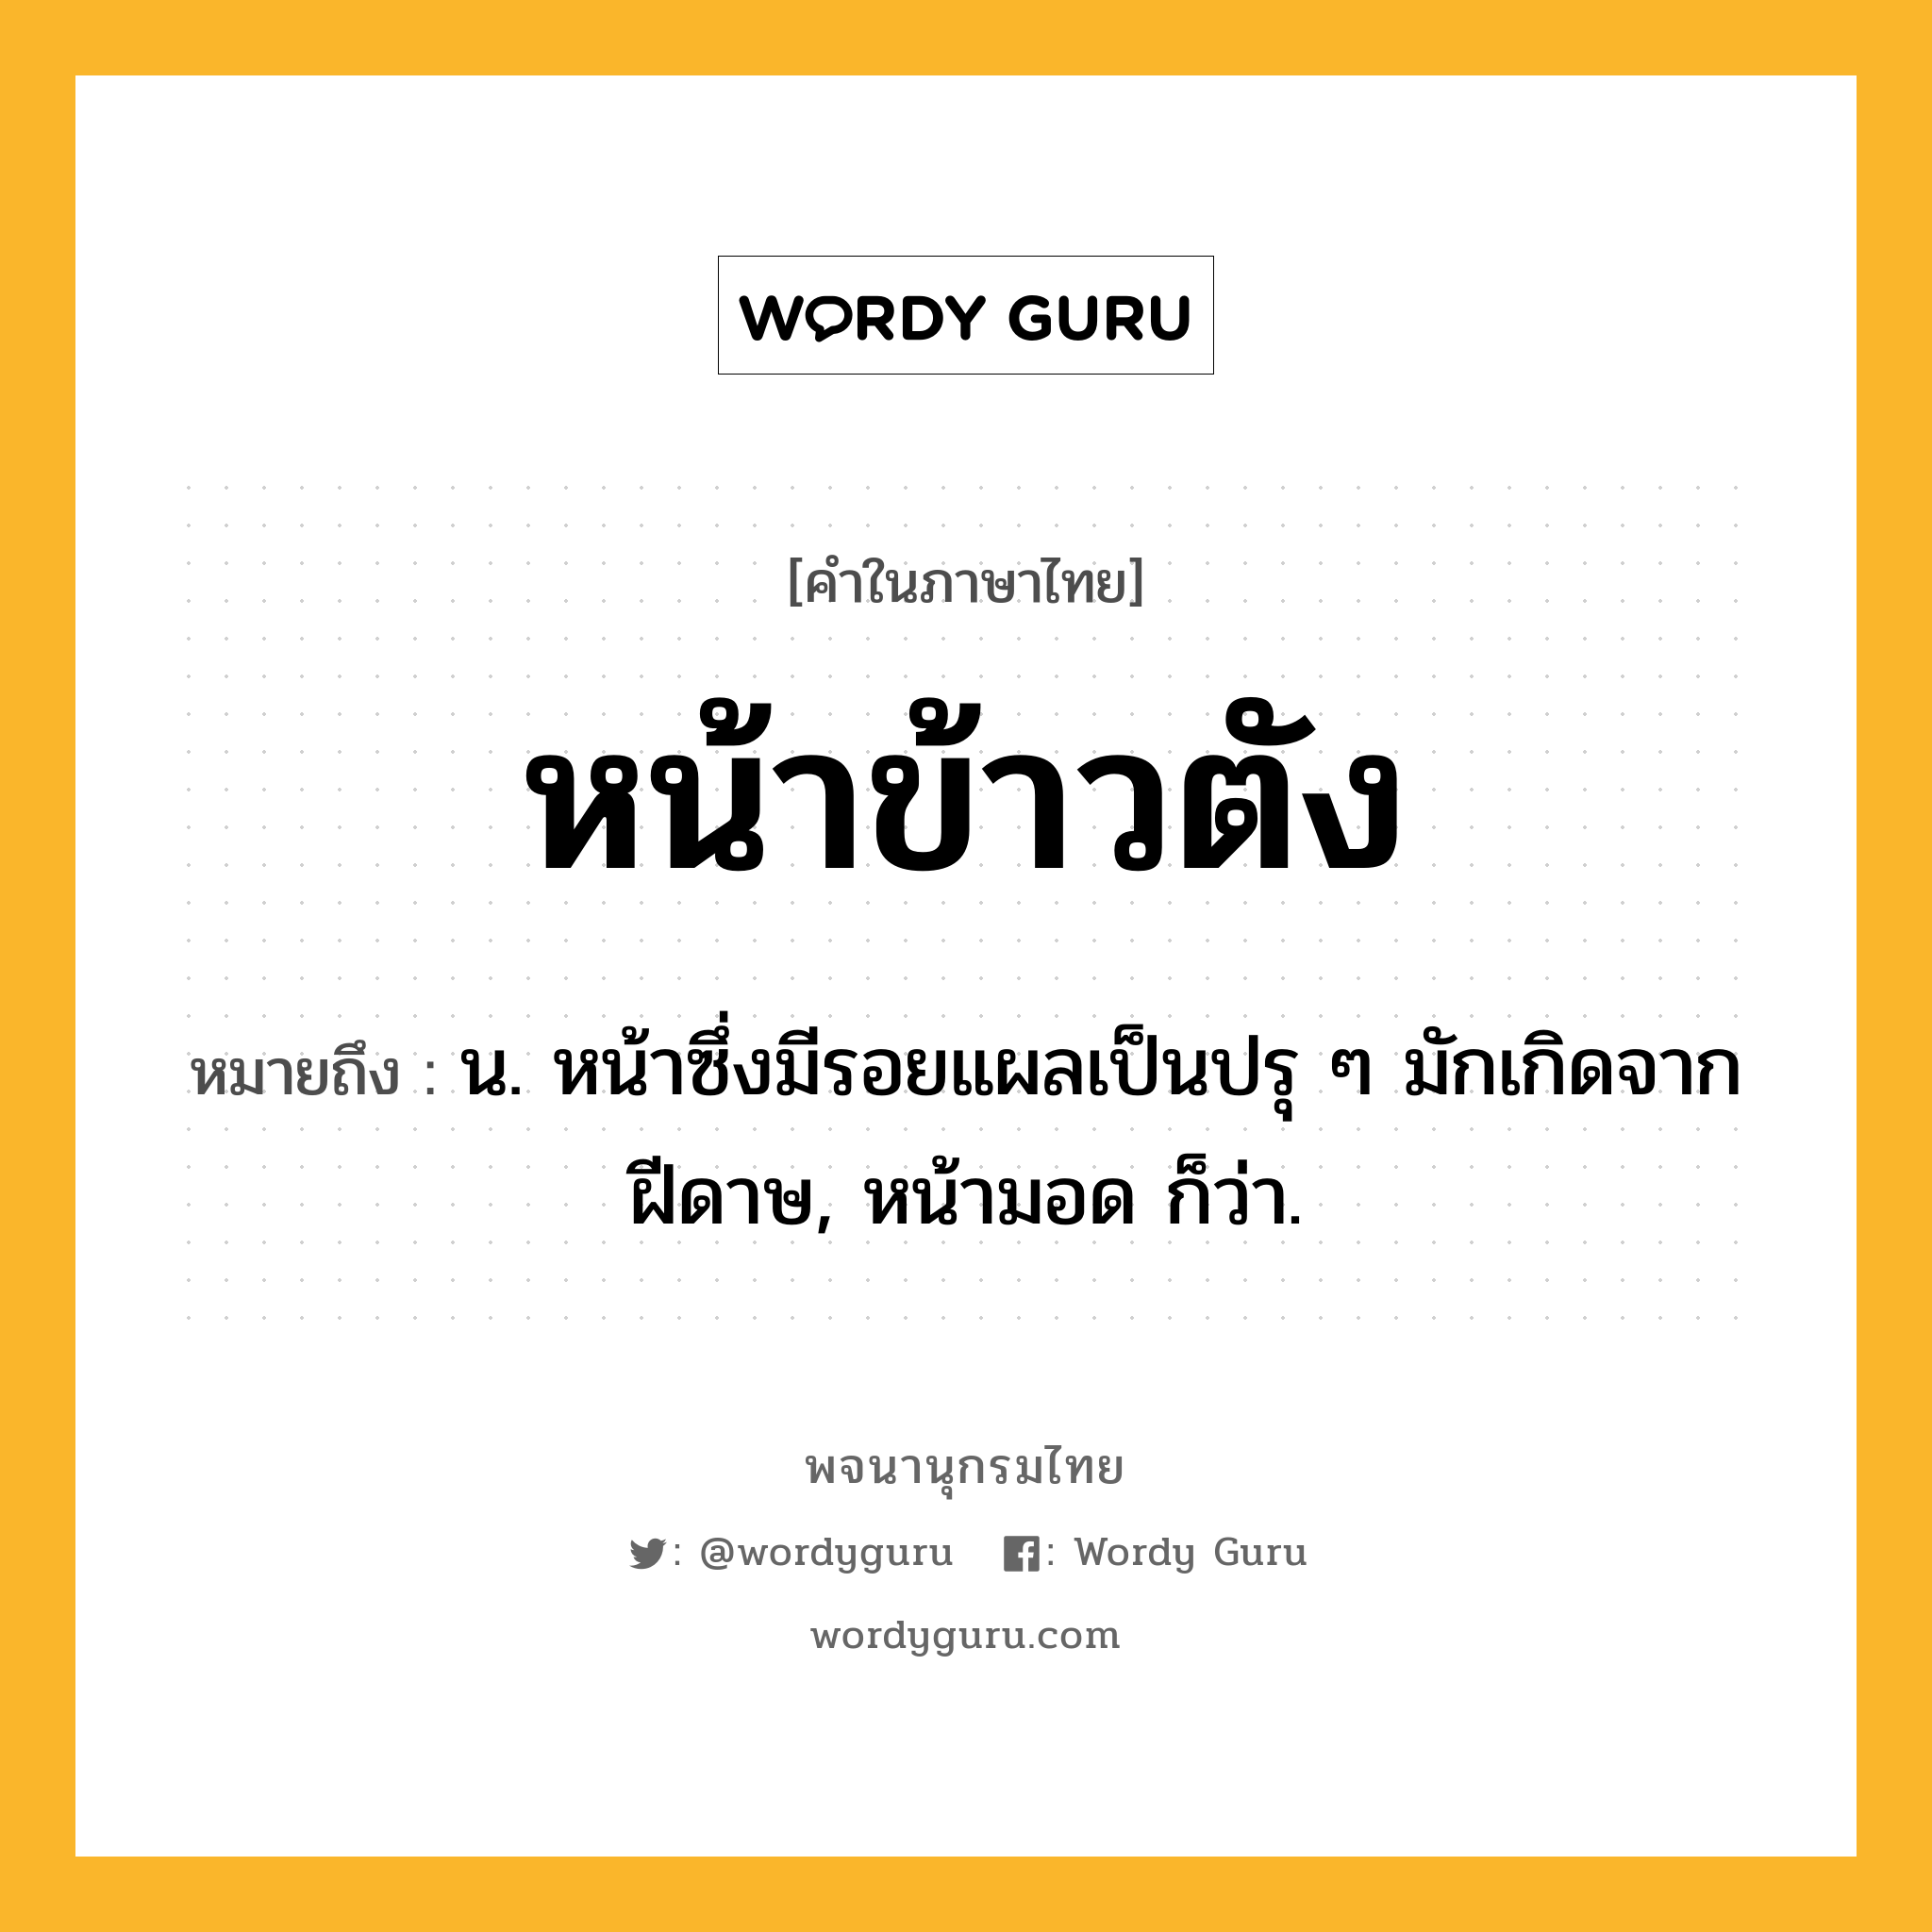 หน้าข้าวตัง ความหมาย หมายถึงอะไร?, คำในภาษาไทย หน้าข้าวตัง หมายถึง น. หน้าซึ่งมีรอยแผลเป็นปรุ ๆ มักเกิดจากฝีดาษ, หน้ามอด ก็ว่า.